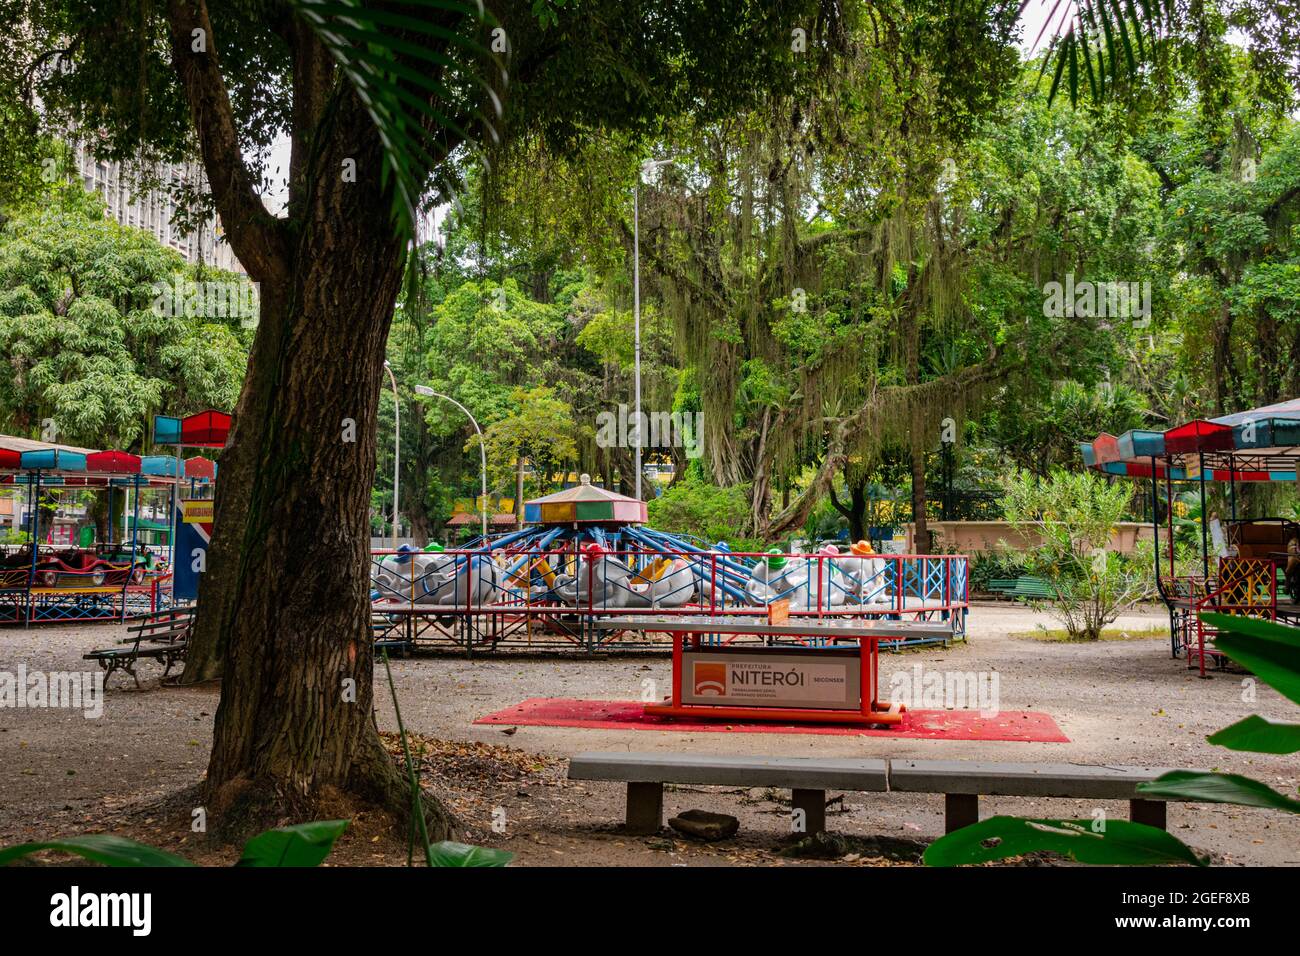 Parco pubblico urbano, noto come campo de São Bento, chiuso e senza persone a causa del blocco decretato durante la pandemia COVID-19 Foto Stock